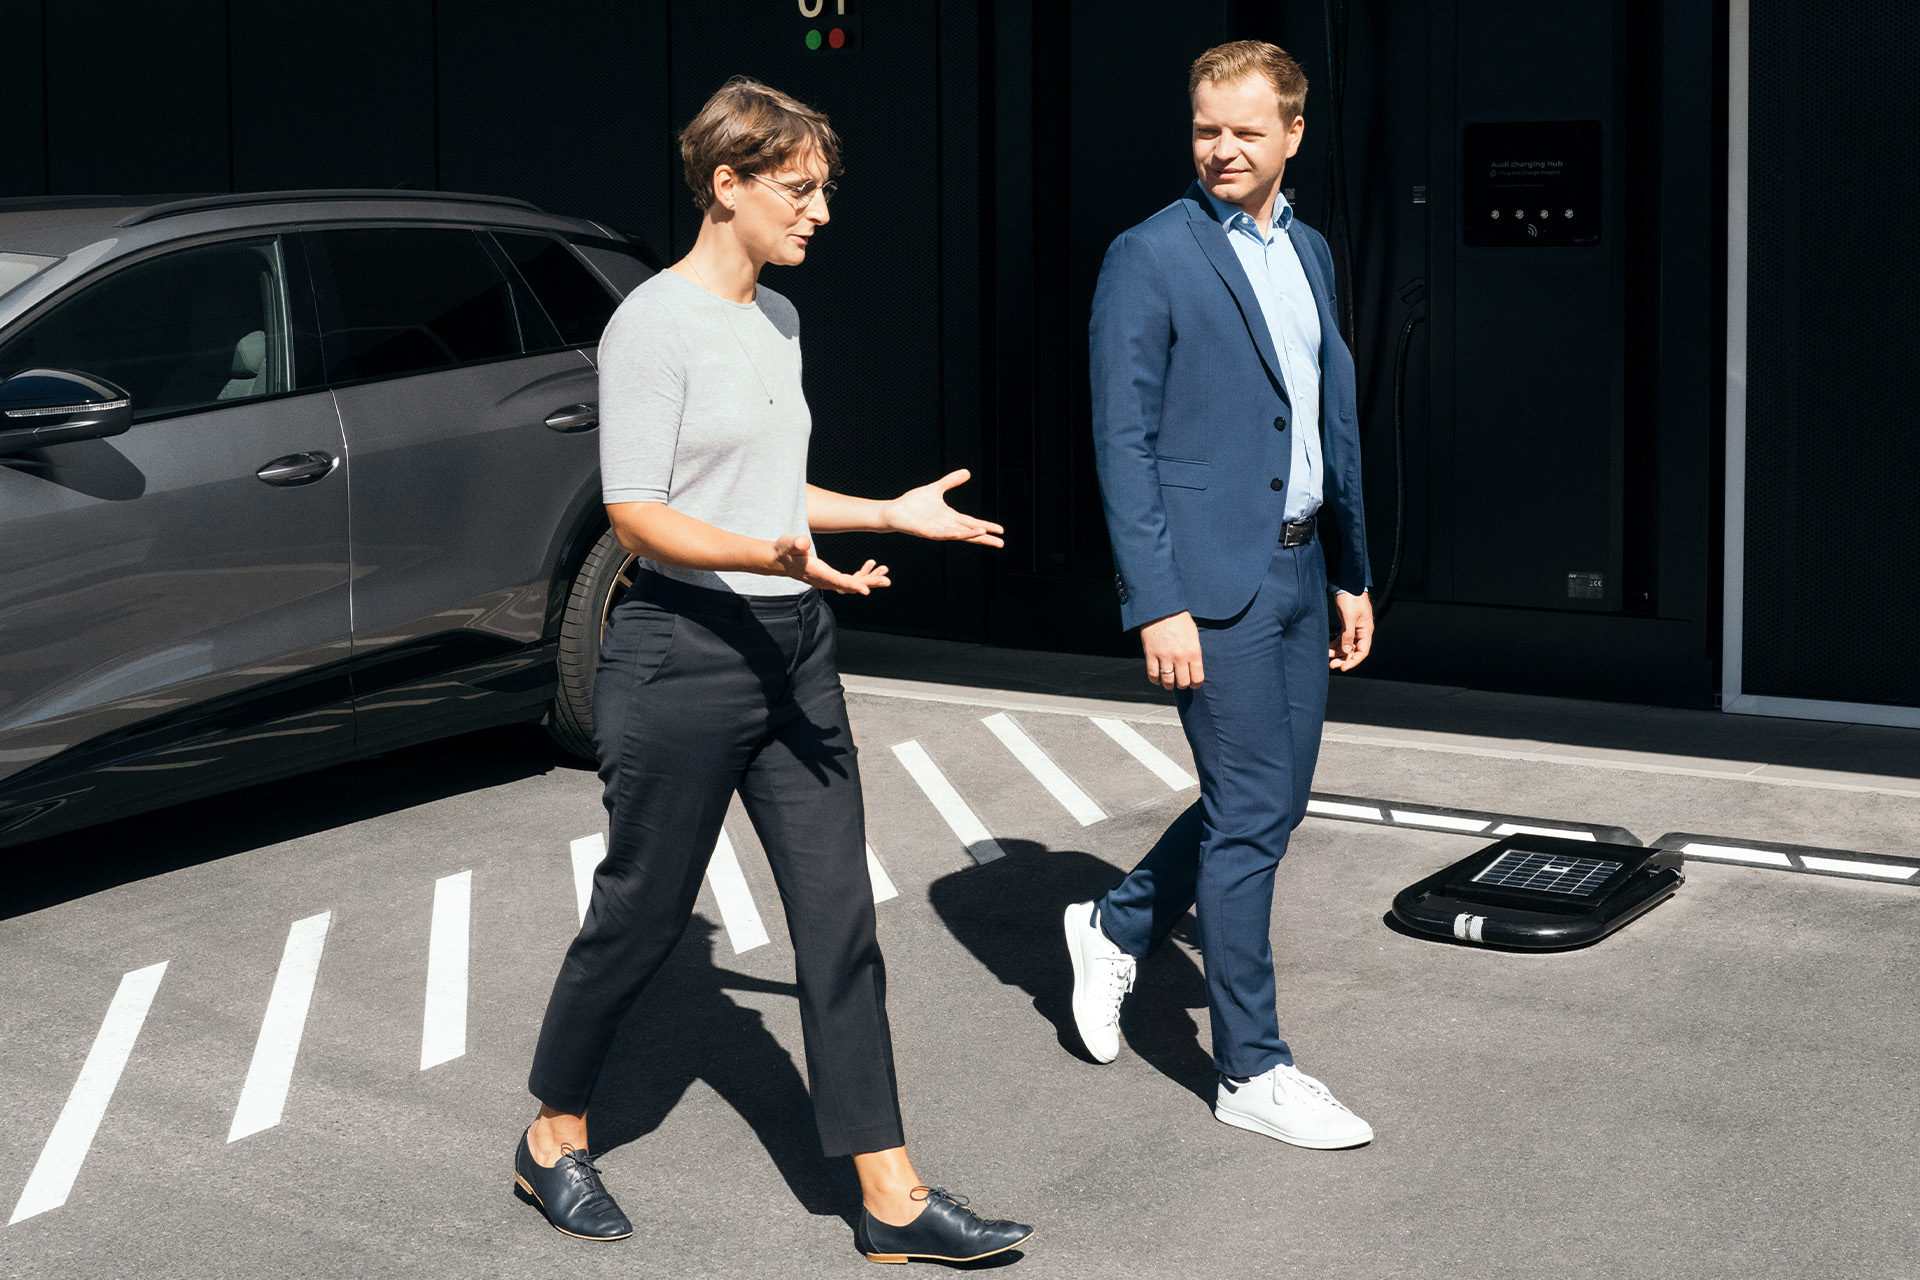 Gli esperti di sostenibilità Johanna Klewitz e Malte Vömel attraversano il parcheggio davanti all'hub di ricarica Audi di Norimberga.